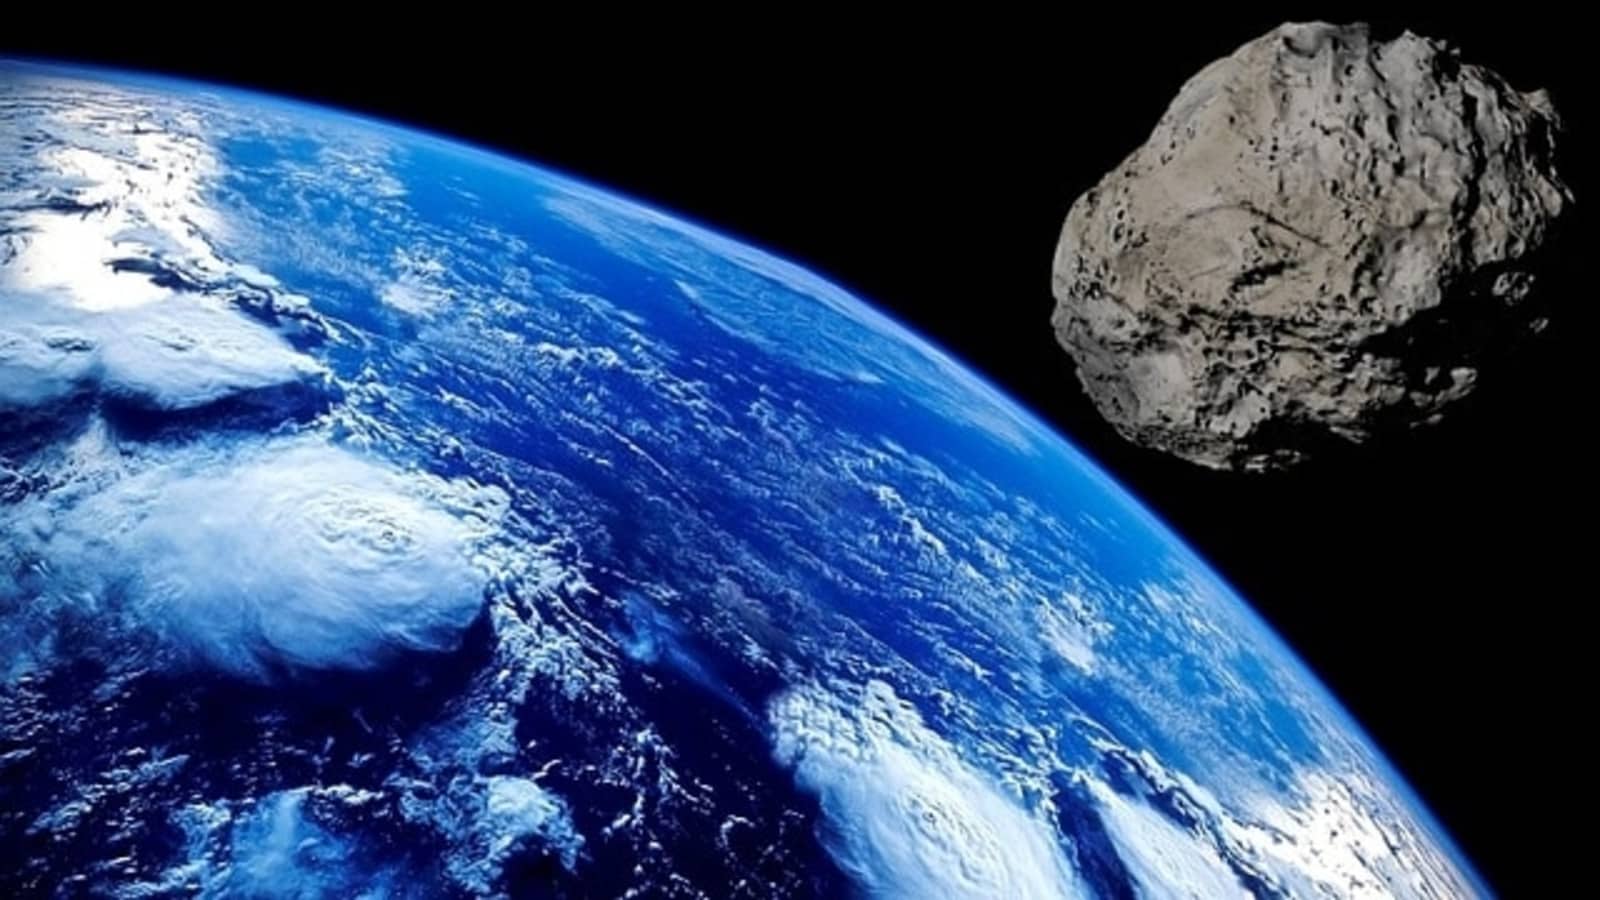 2 astéroïdes effrayants se précipitent vers la Terre aujourd’hui ;  La NASA dit que 1 est un gros astéroïde de 97 pieds